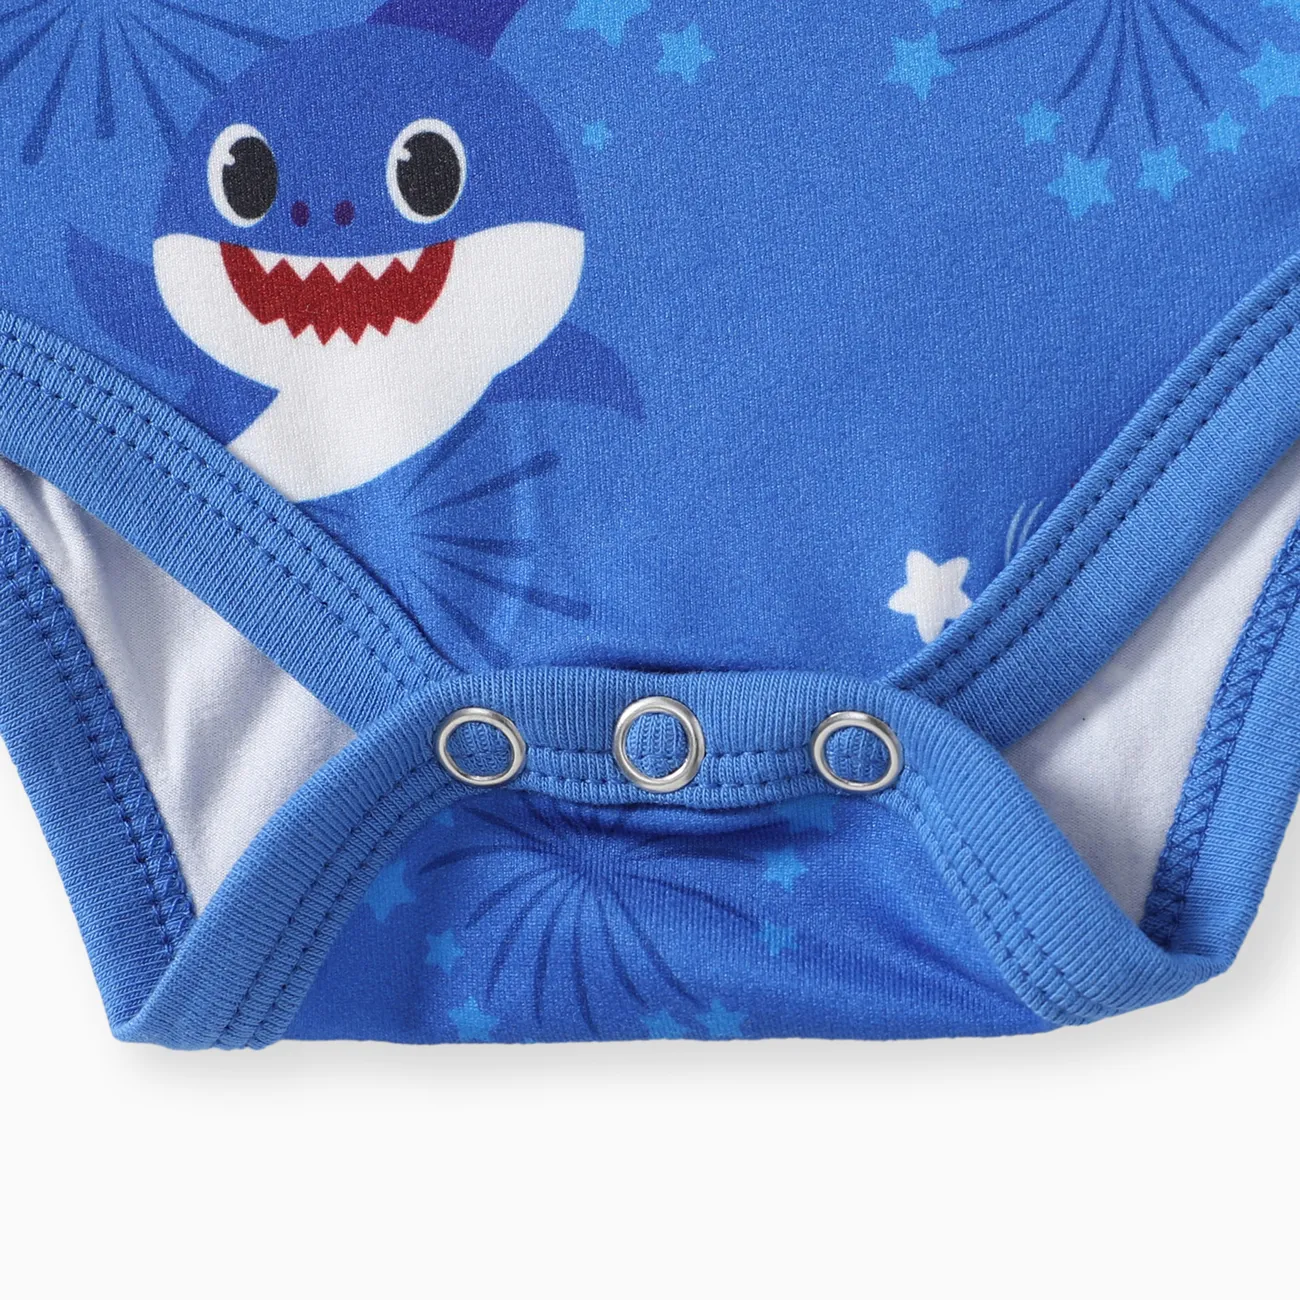 Baby Shark Fête Nationale Bébé Unisexe Requin Enfantin Manches courtes Barboteuses Bleu big image 1